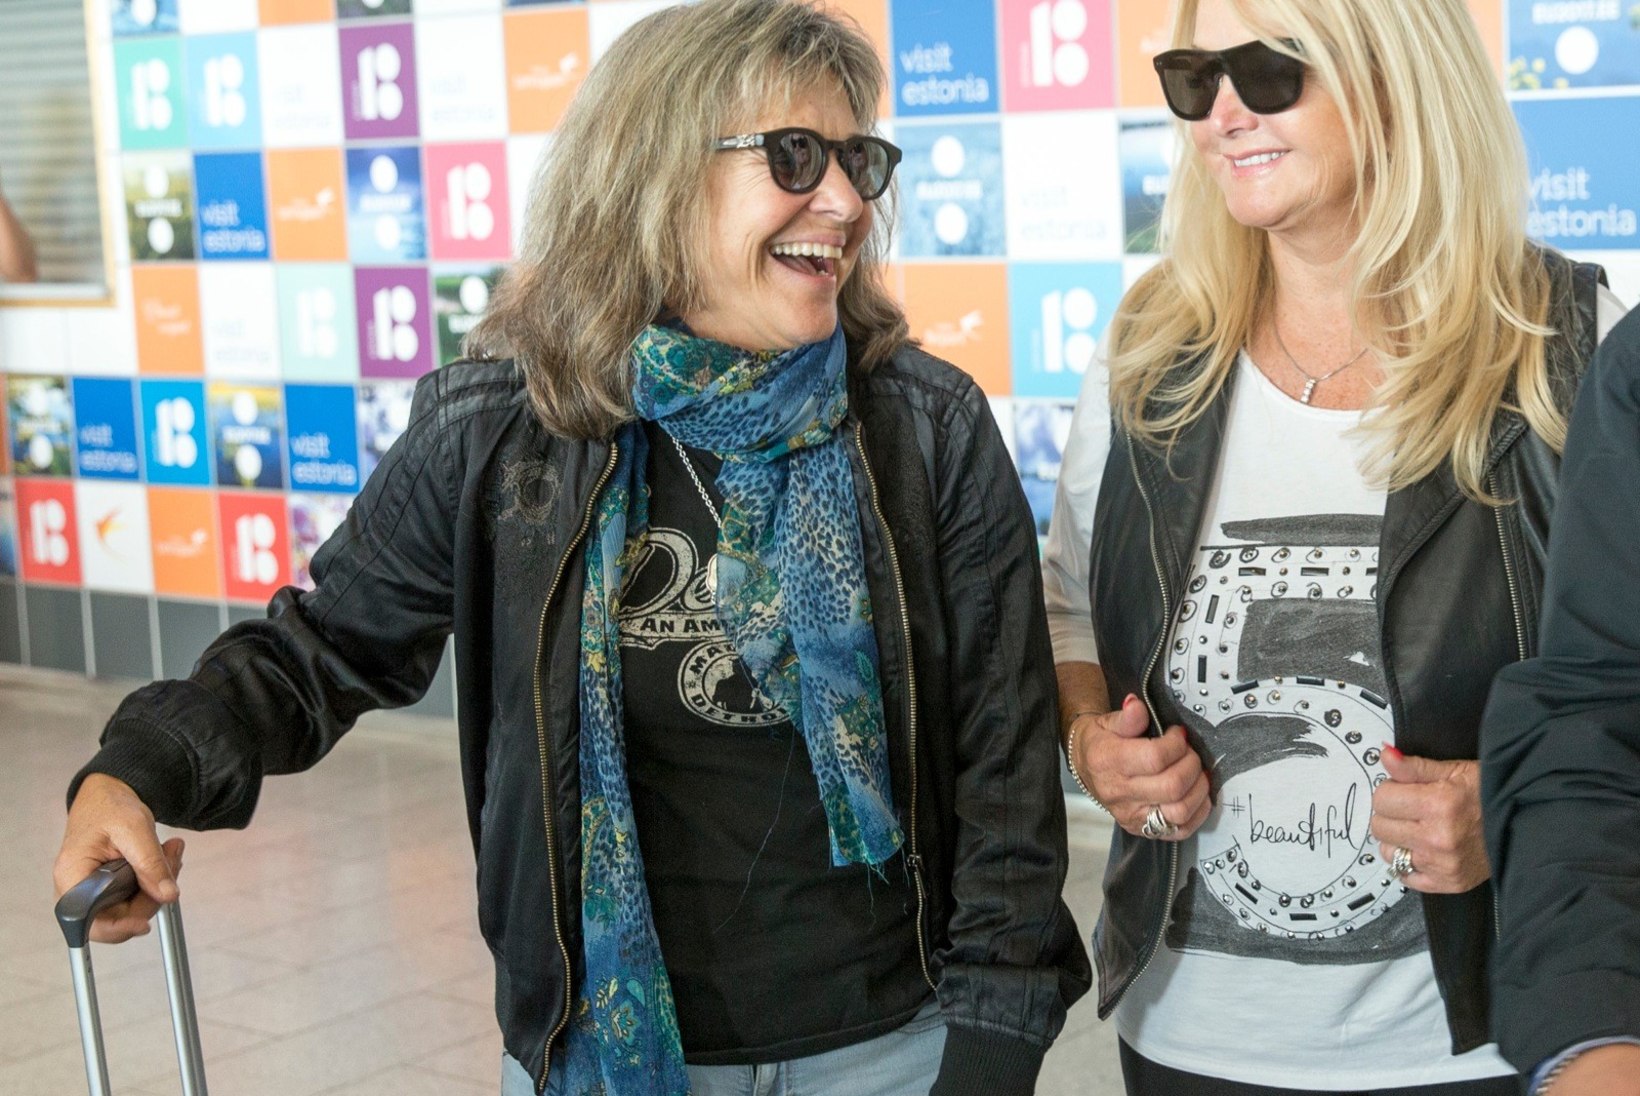 FOTOD | Rockilegendid Bonnie Tyler ja Suzi Quatro saabusid Eestisse